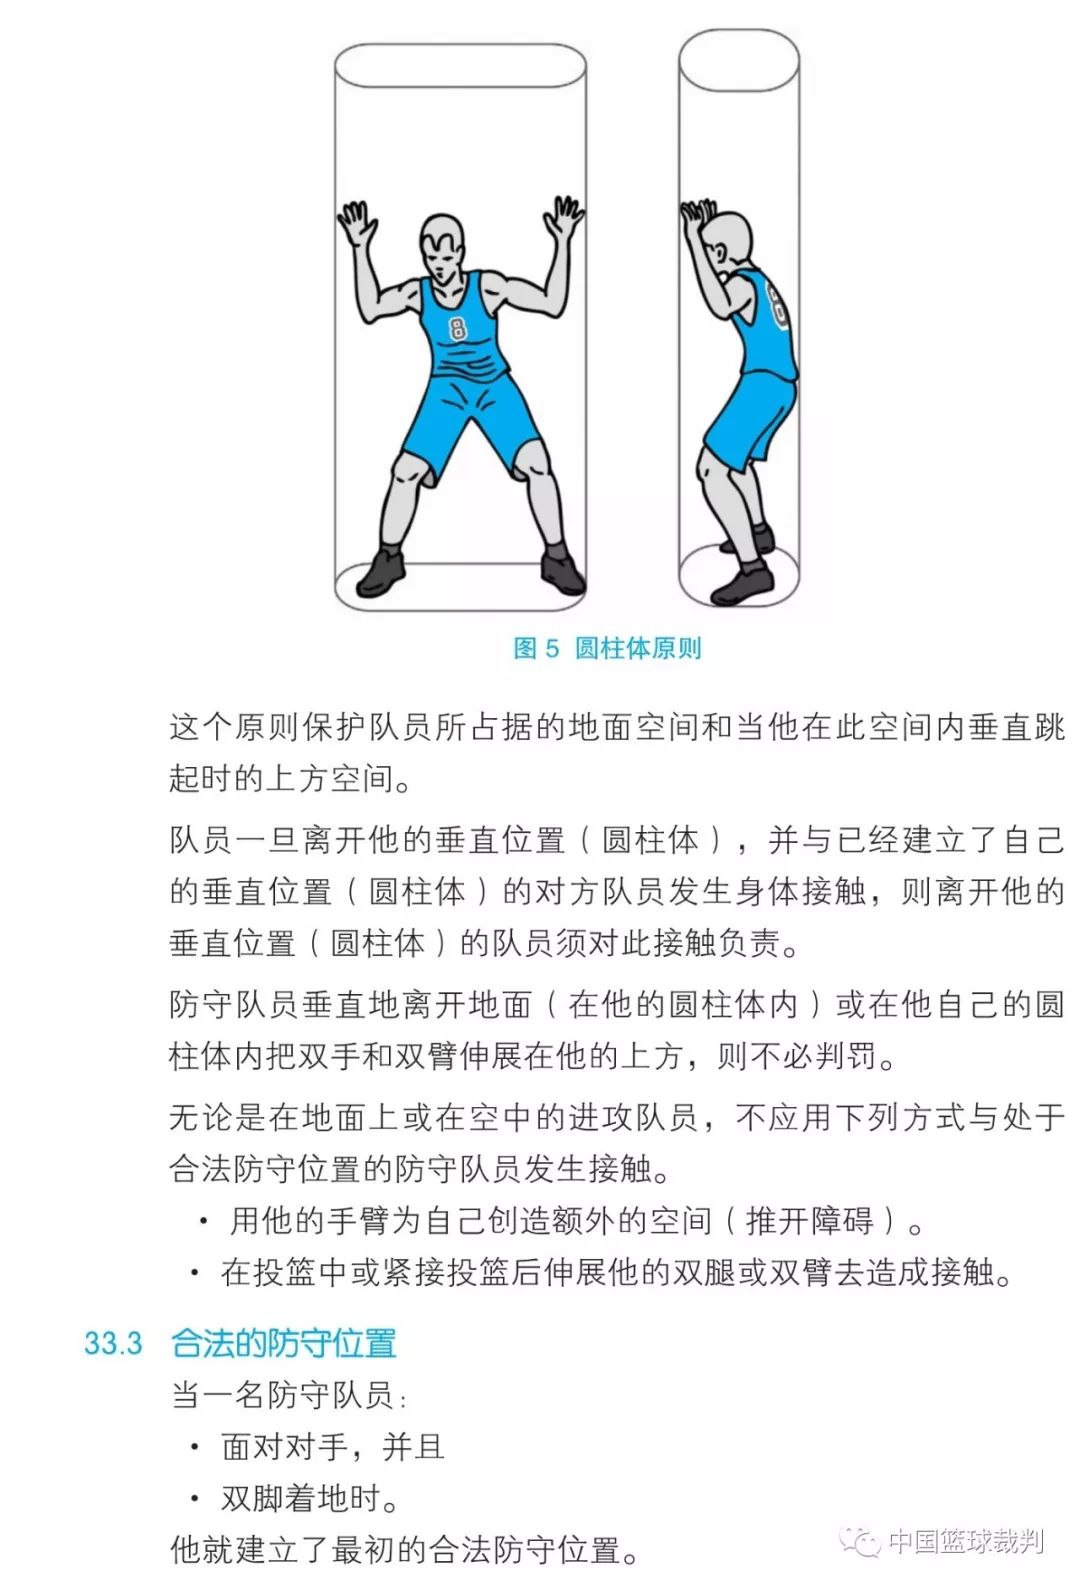 篮球规则2019中文版——第六章 犯规 [第33条: 接触:一般原则]